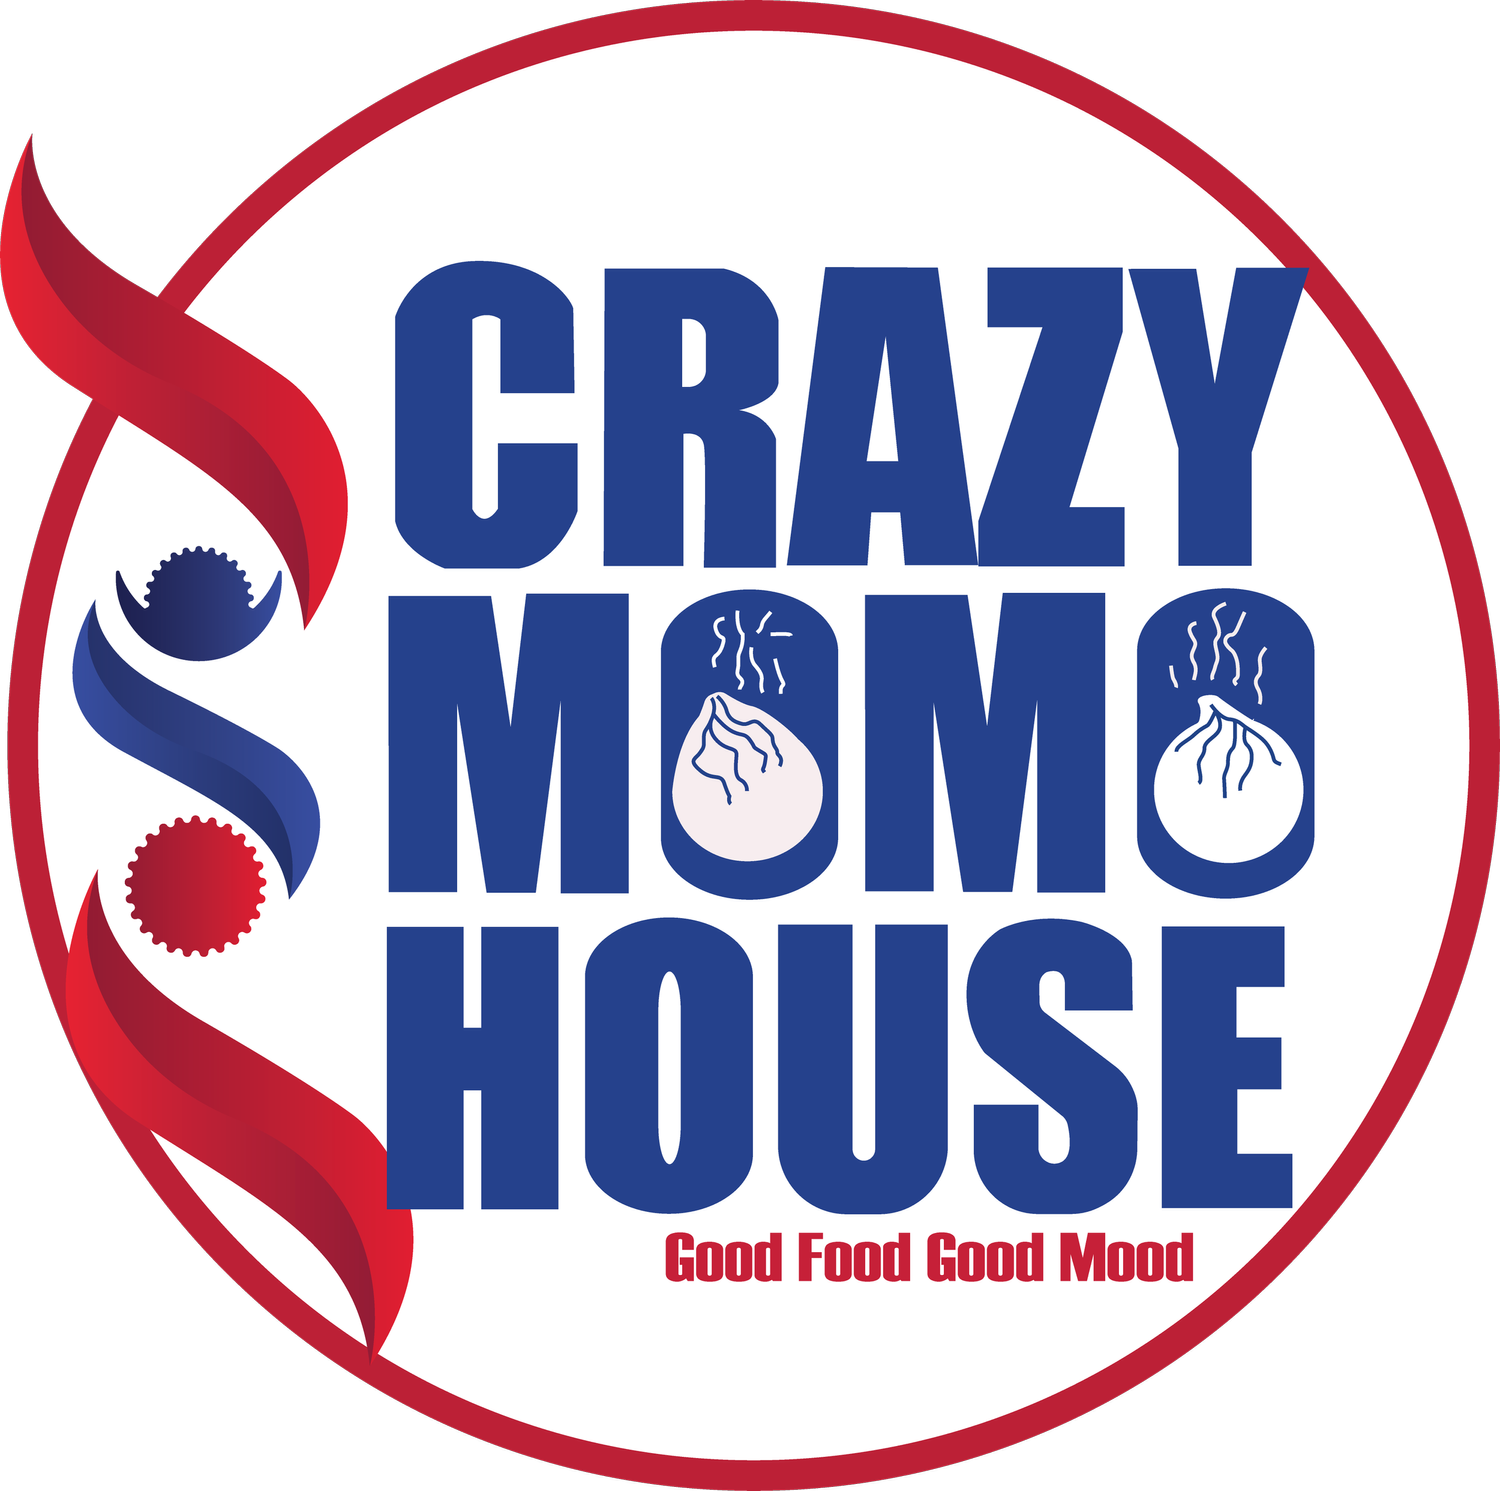 Crazy Momo House